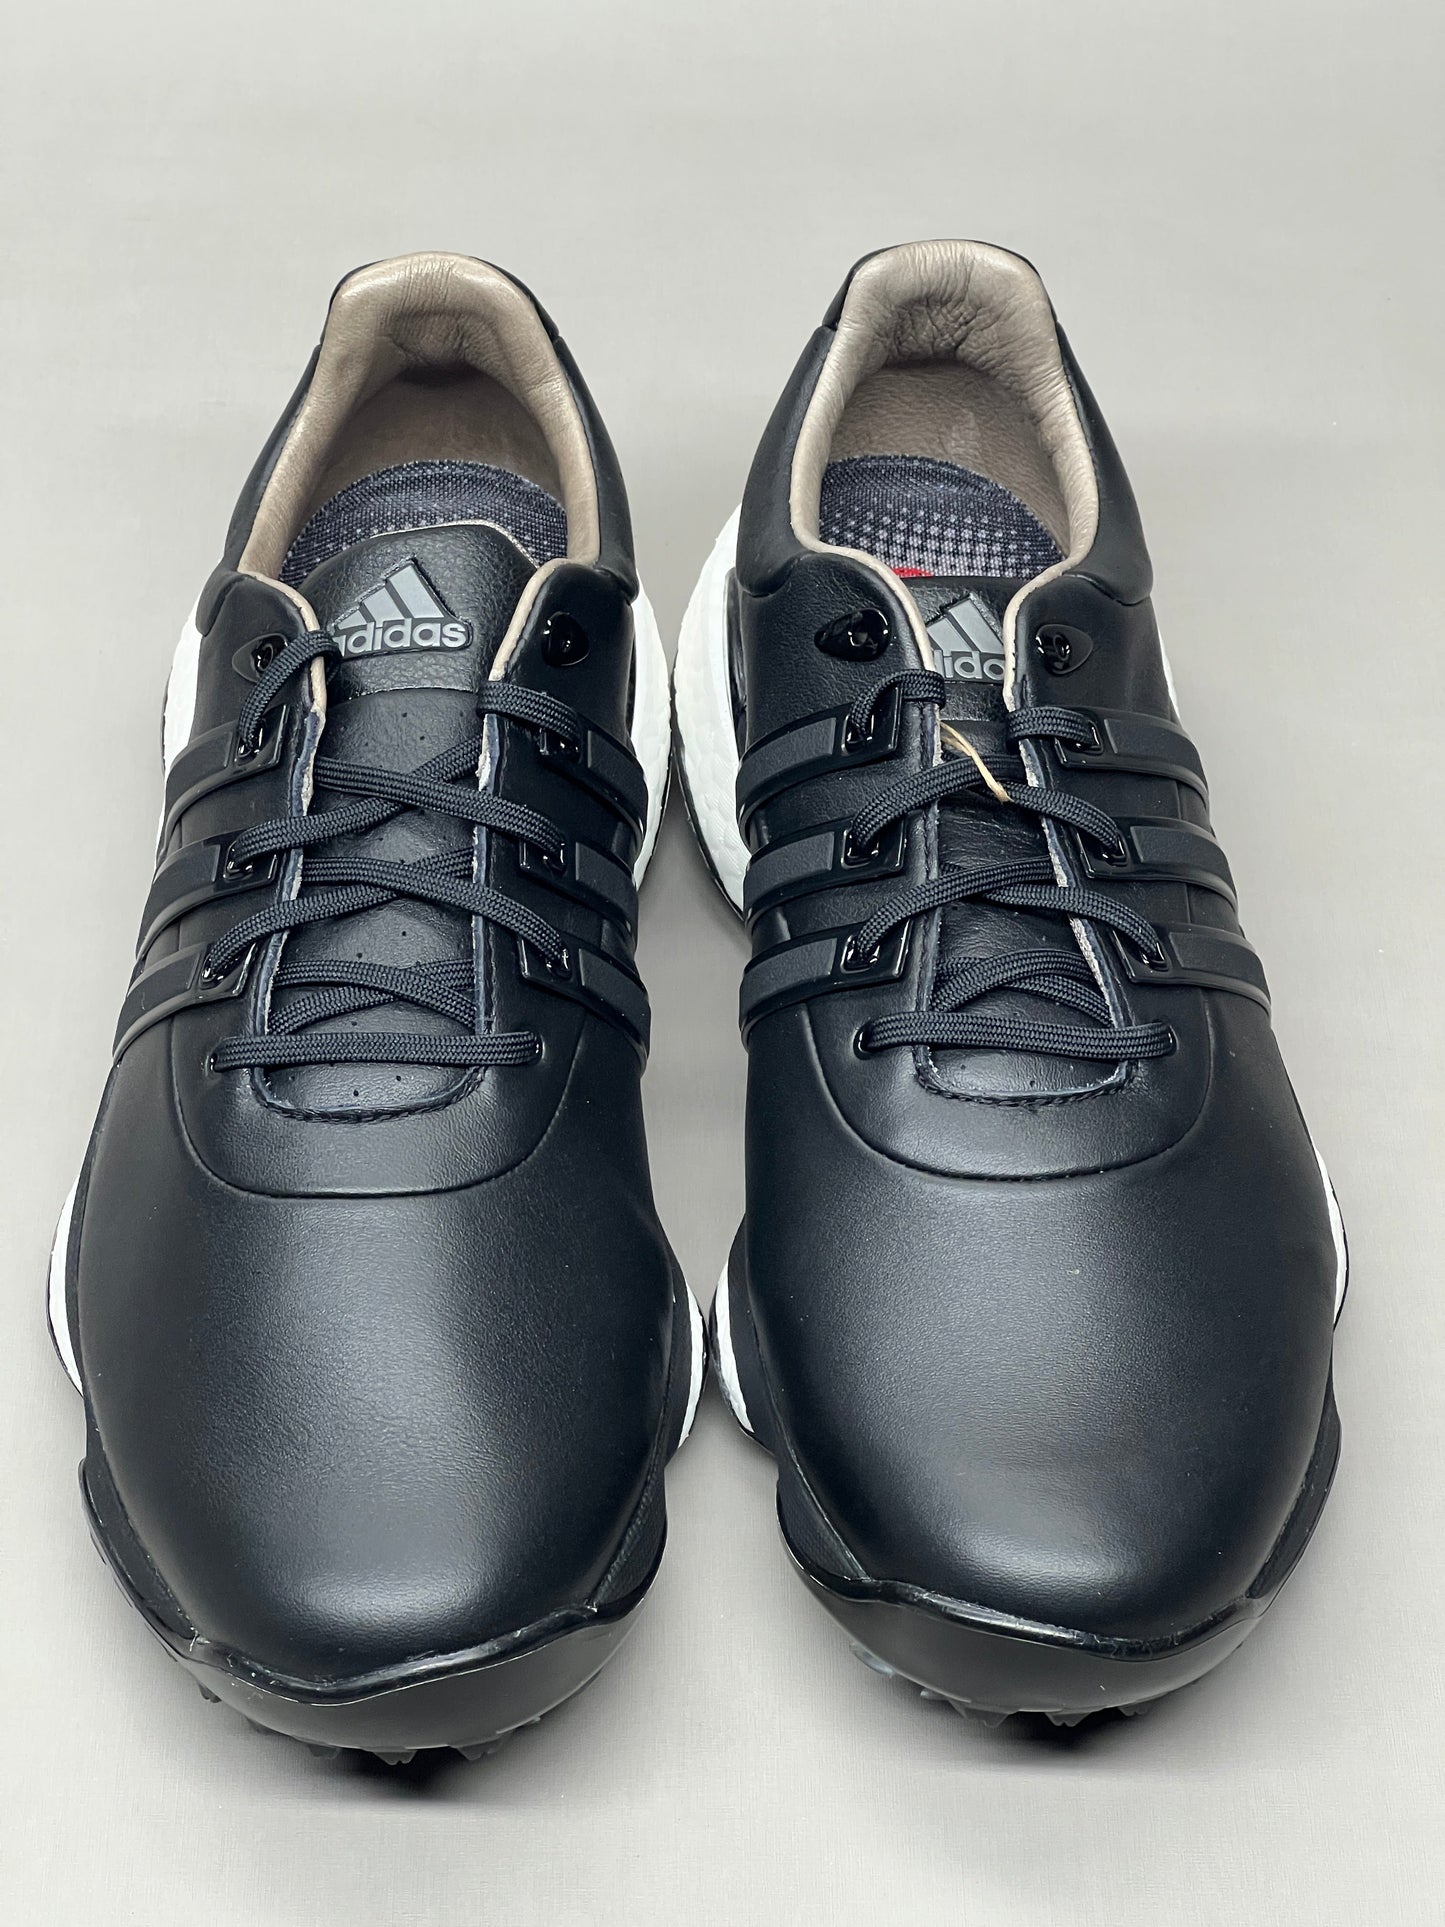 ADIDAS Golf Shoes TOUR360 22 Leather Men's Sz 13 Black / Iron Metallic GZ3158 (New)